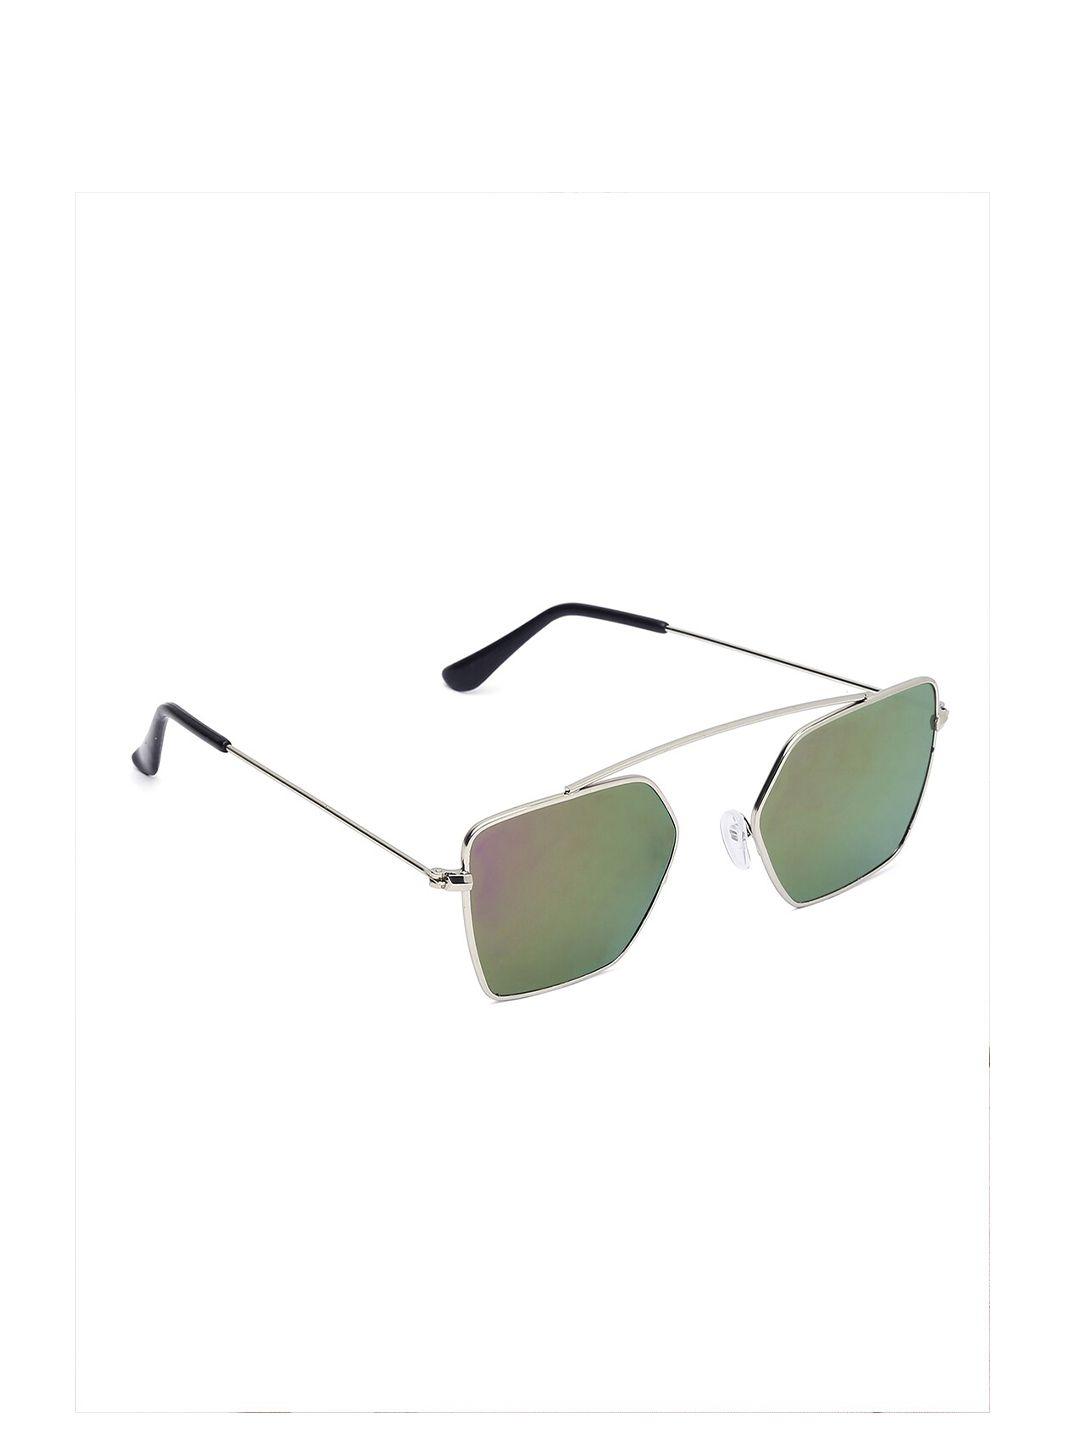 swiss design unisex mirrored lens & silver-toned other sunglasses uv lens sdsg21-2255703